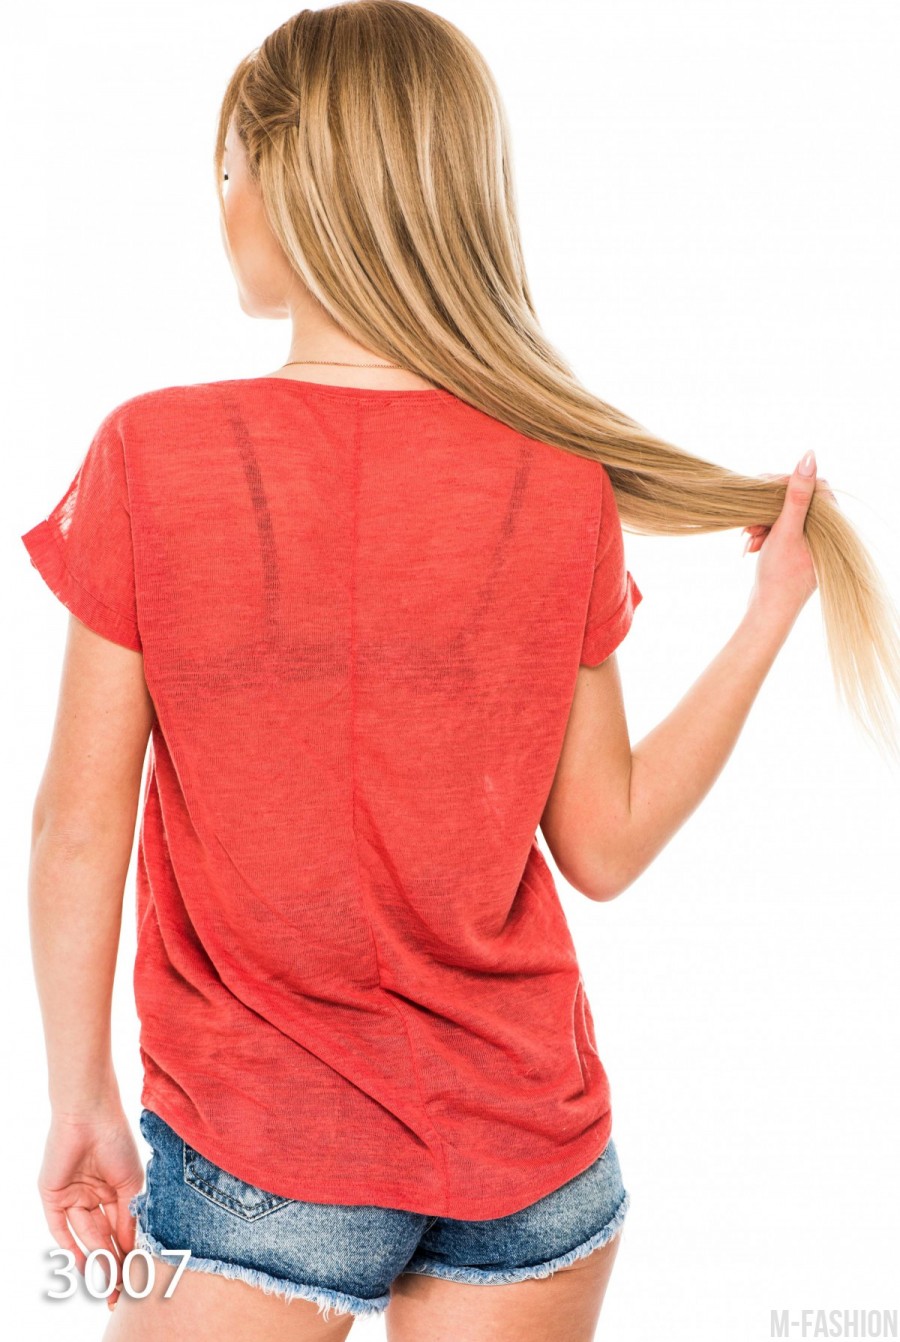 Бордовая трикотажная футболка с кружевной вставкой и кармашком- Фото 3